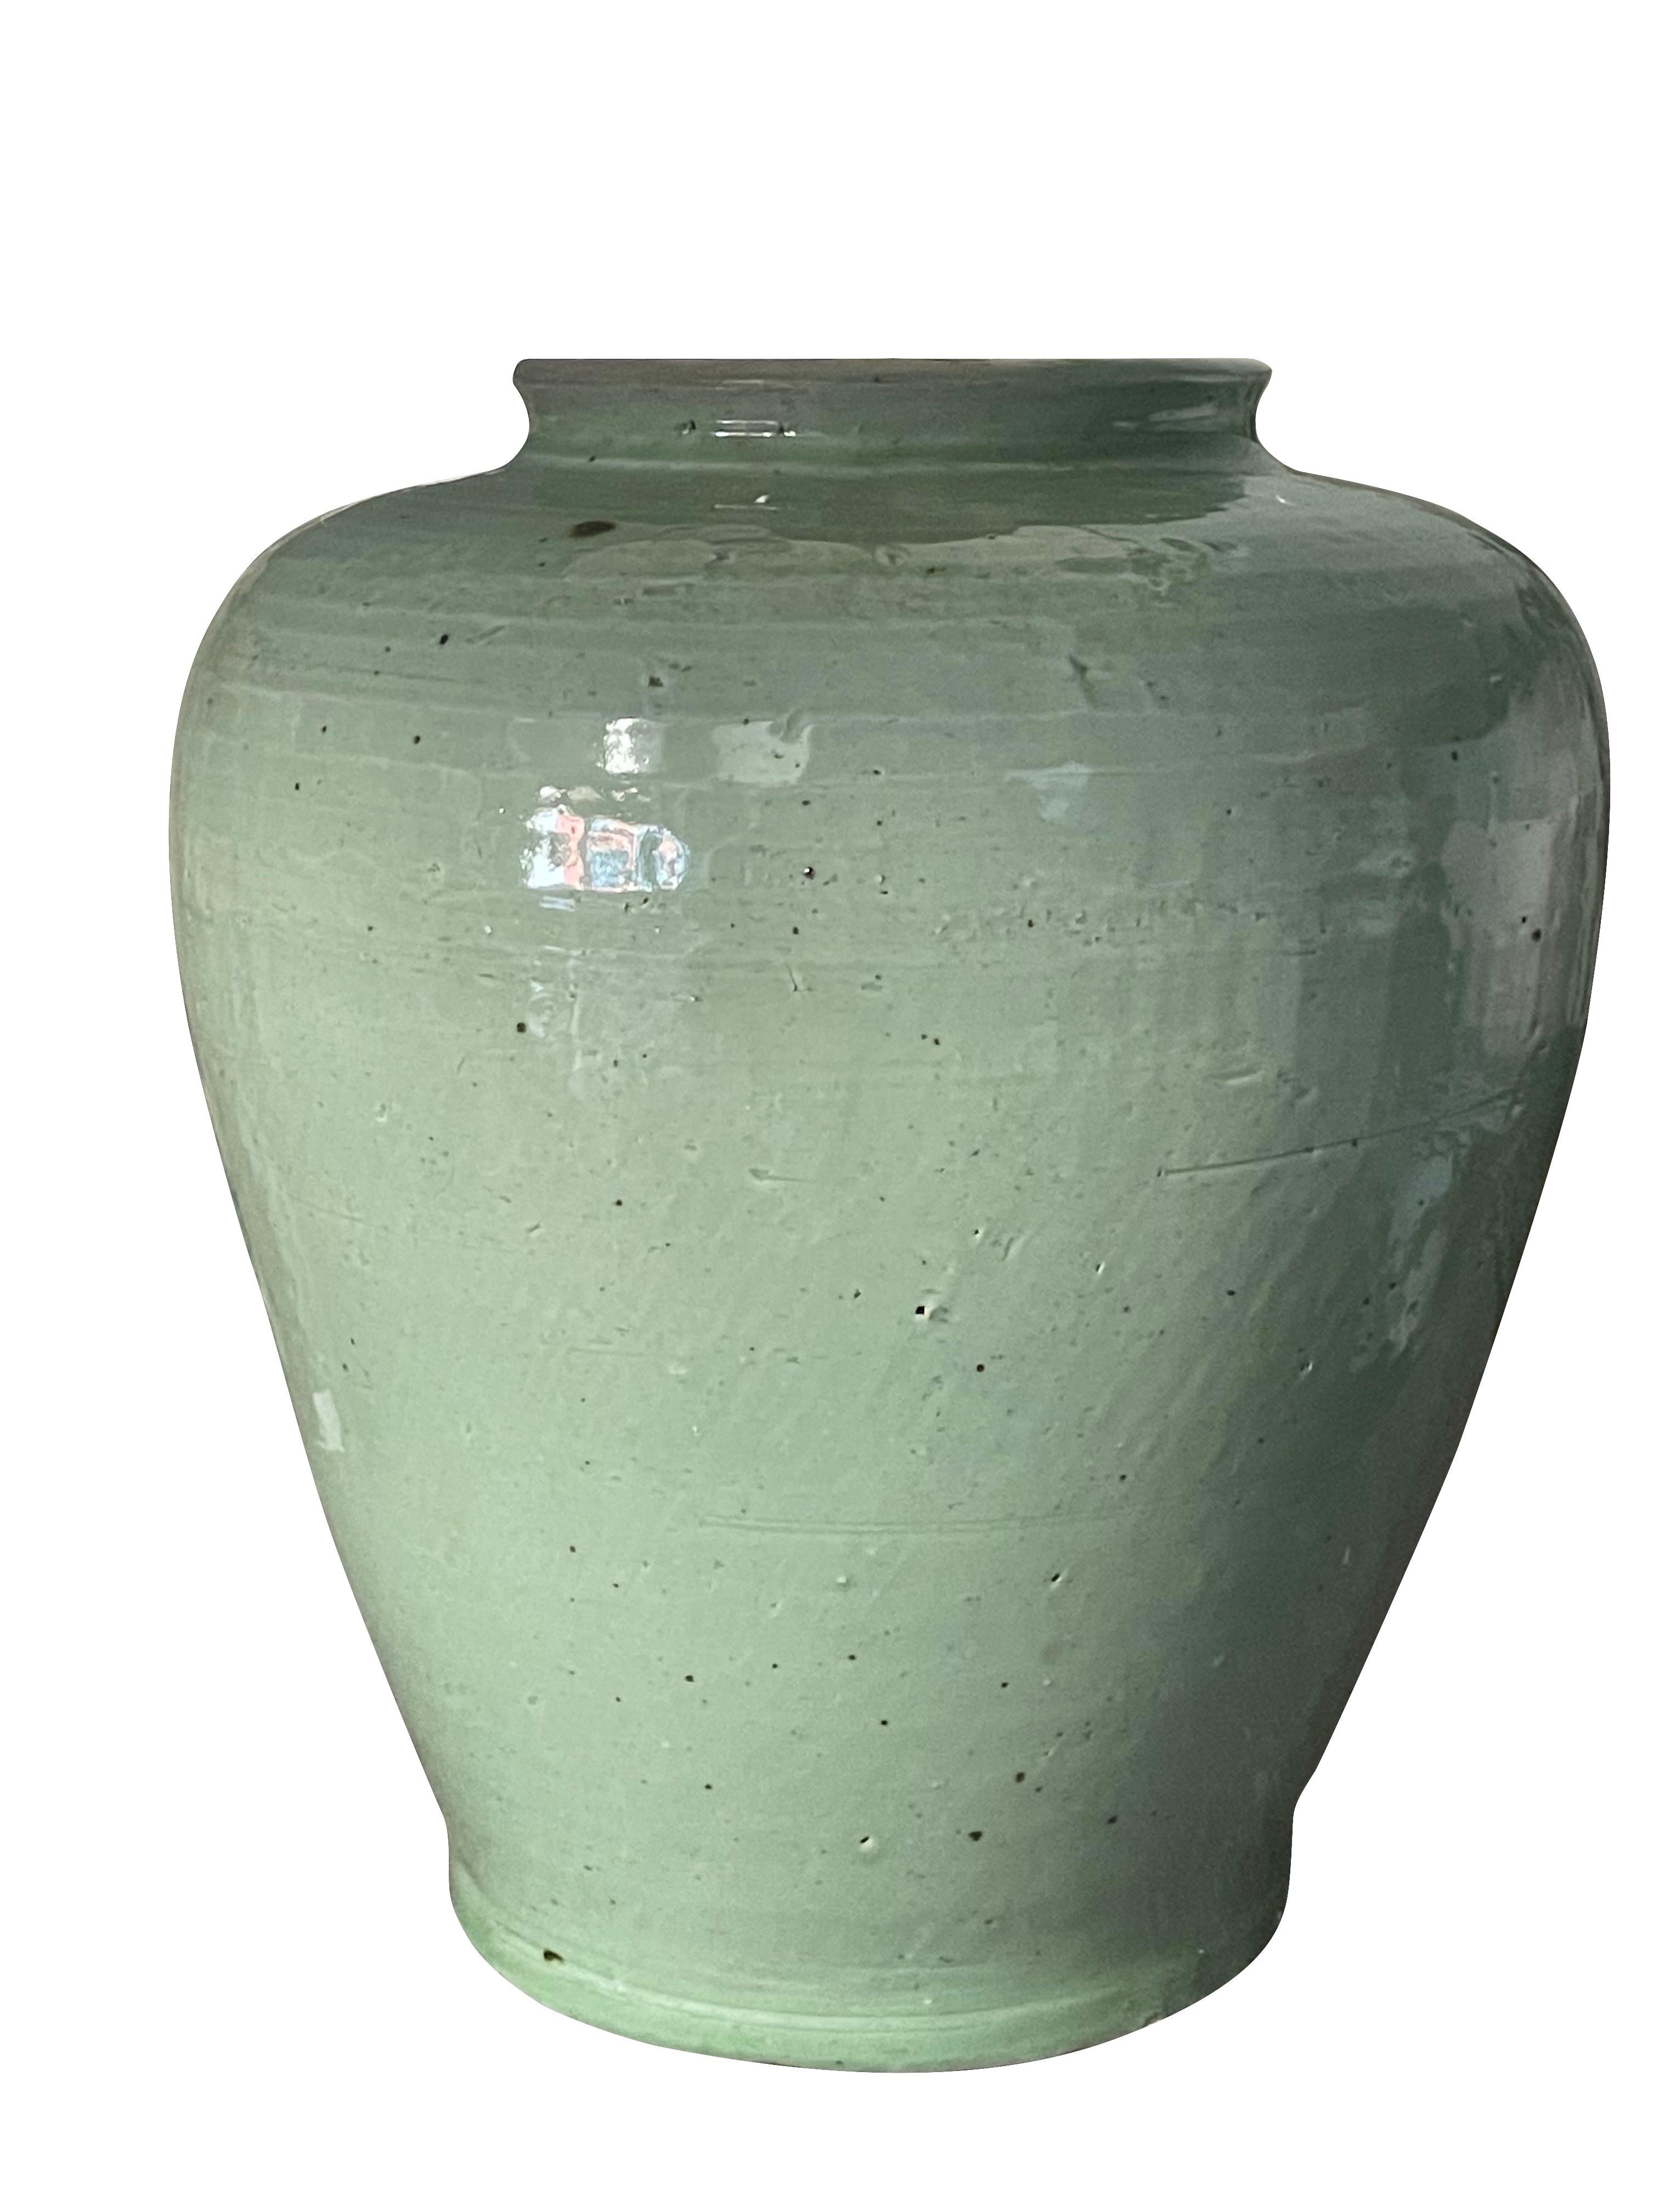 Paire de lampes chinoises contemporaines en céramique émaillée céladon pâle
Pot à gingembre en forme de jarre
La base mesure 9 (P) x 11 (H)
Abat-jour en lin belge
Diamètre de l'abat-jour : 43,18 cm
Hauteur totale 48,26 cm.